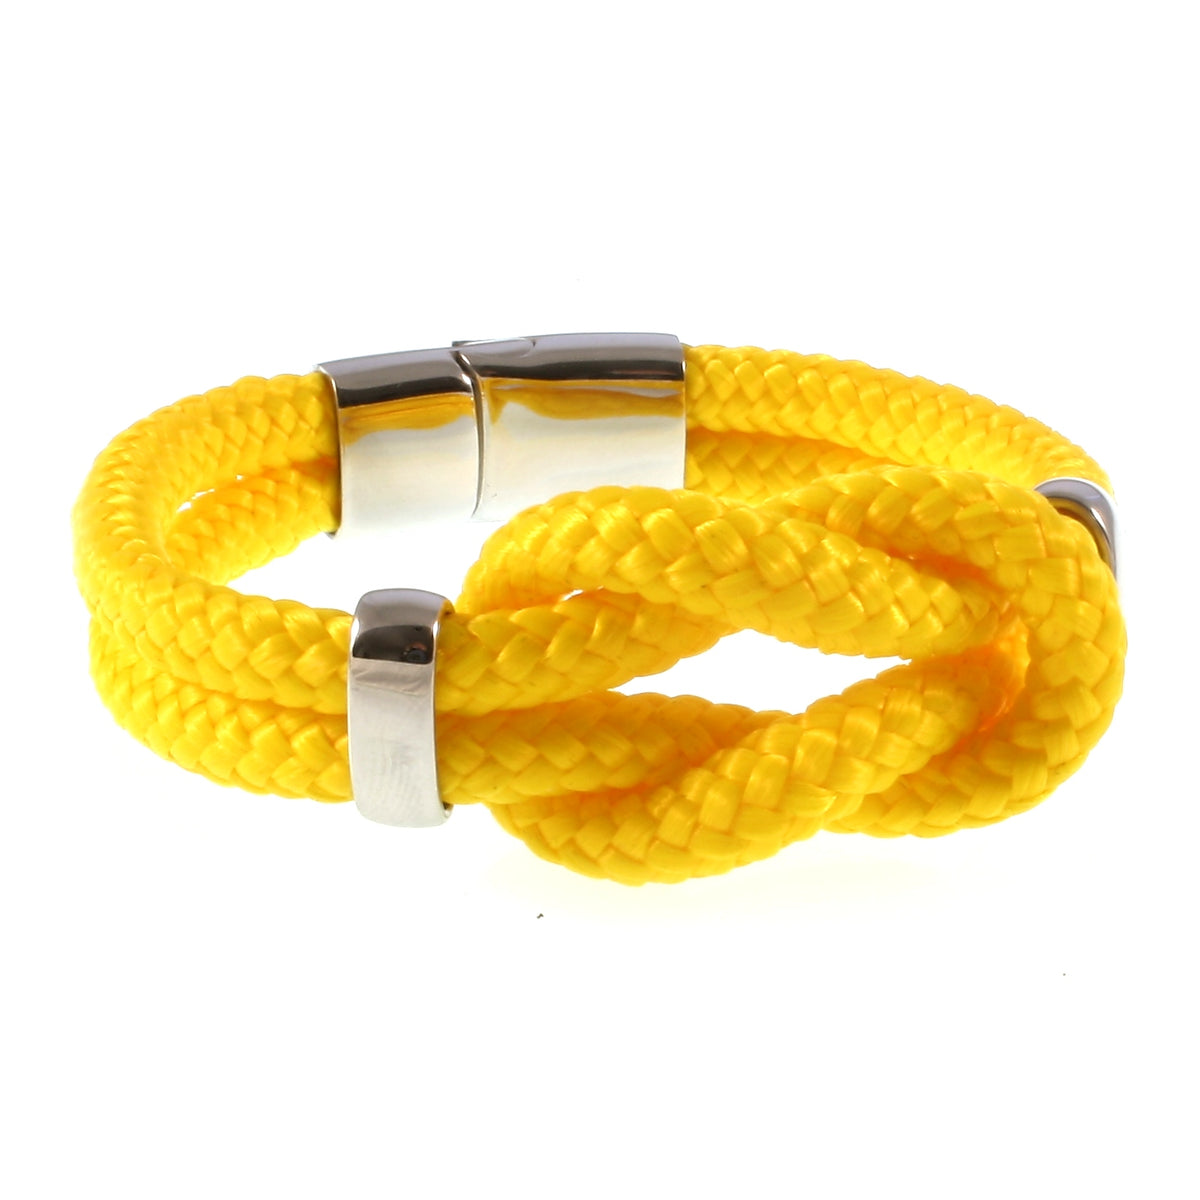 Damen-Segeltau-armband-pure-gelb-silber-geflochten-Edelstahlverschluss-vorn-wavepirate-shop-st